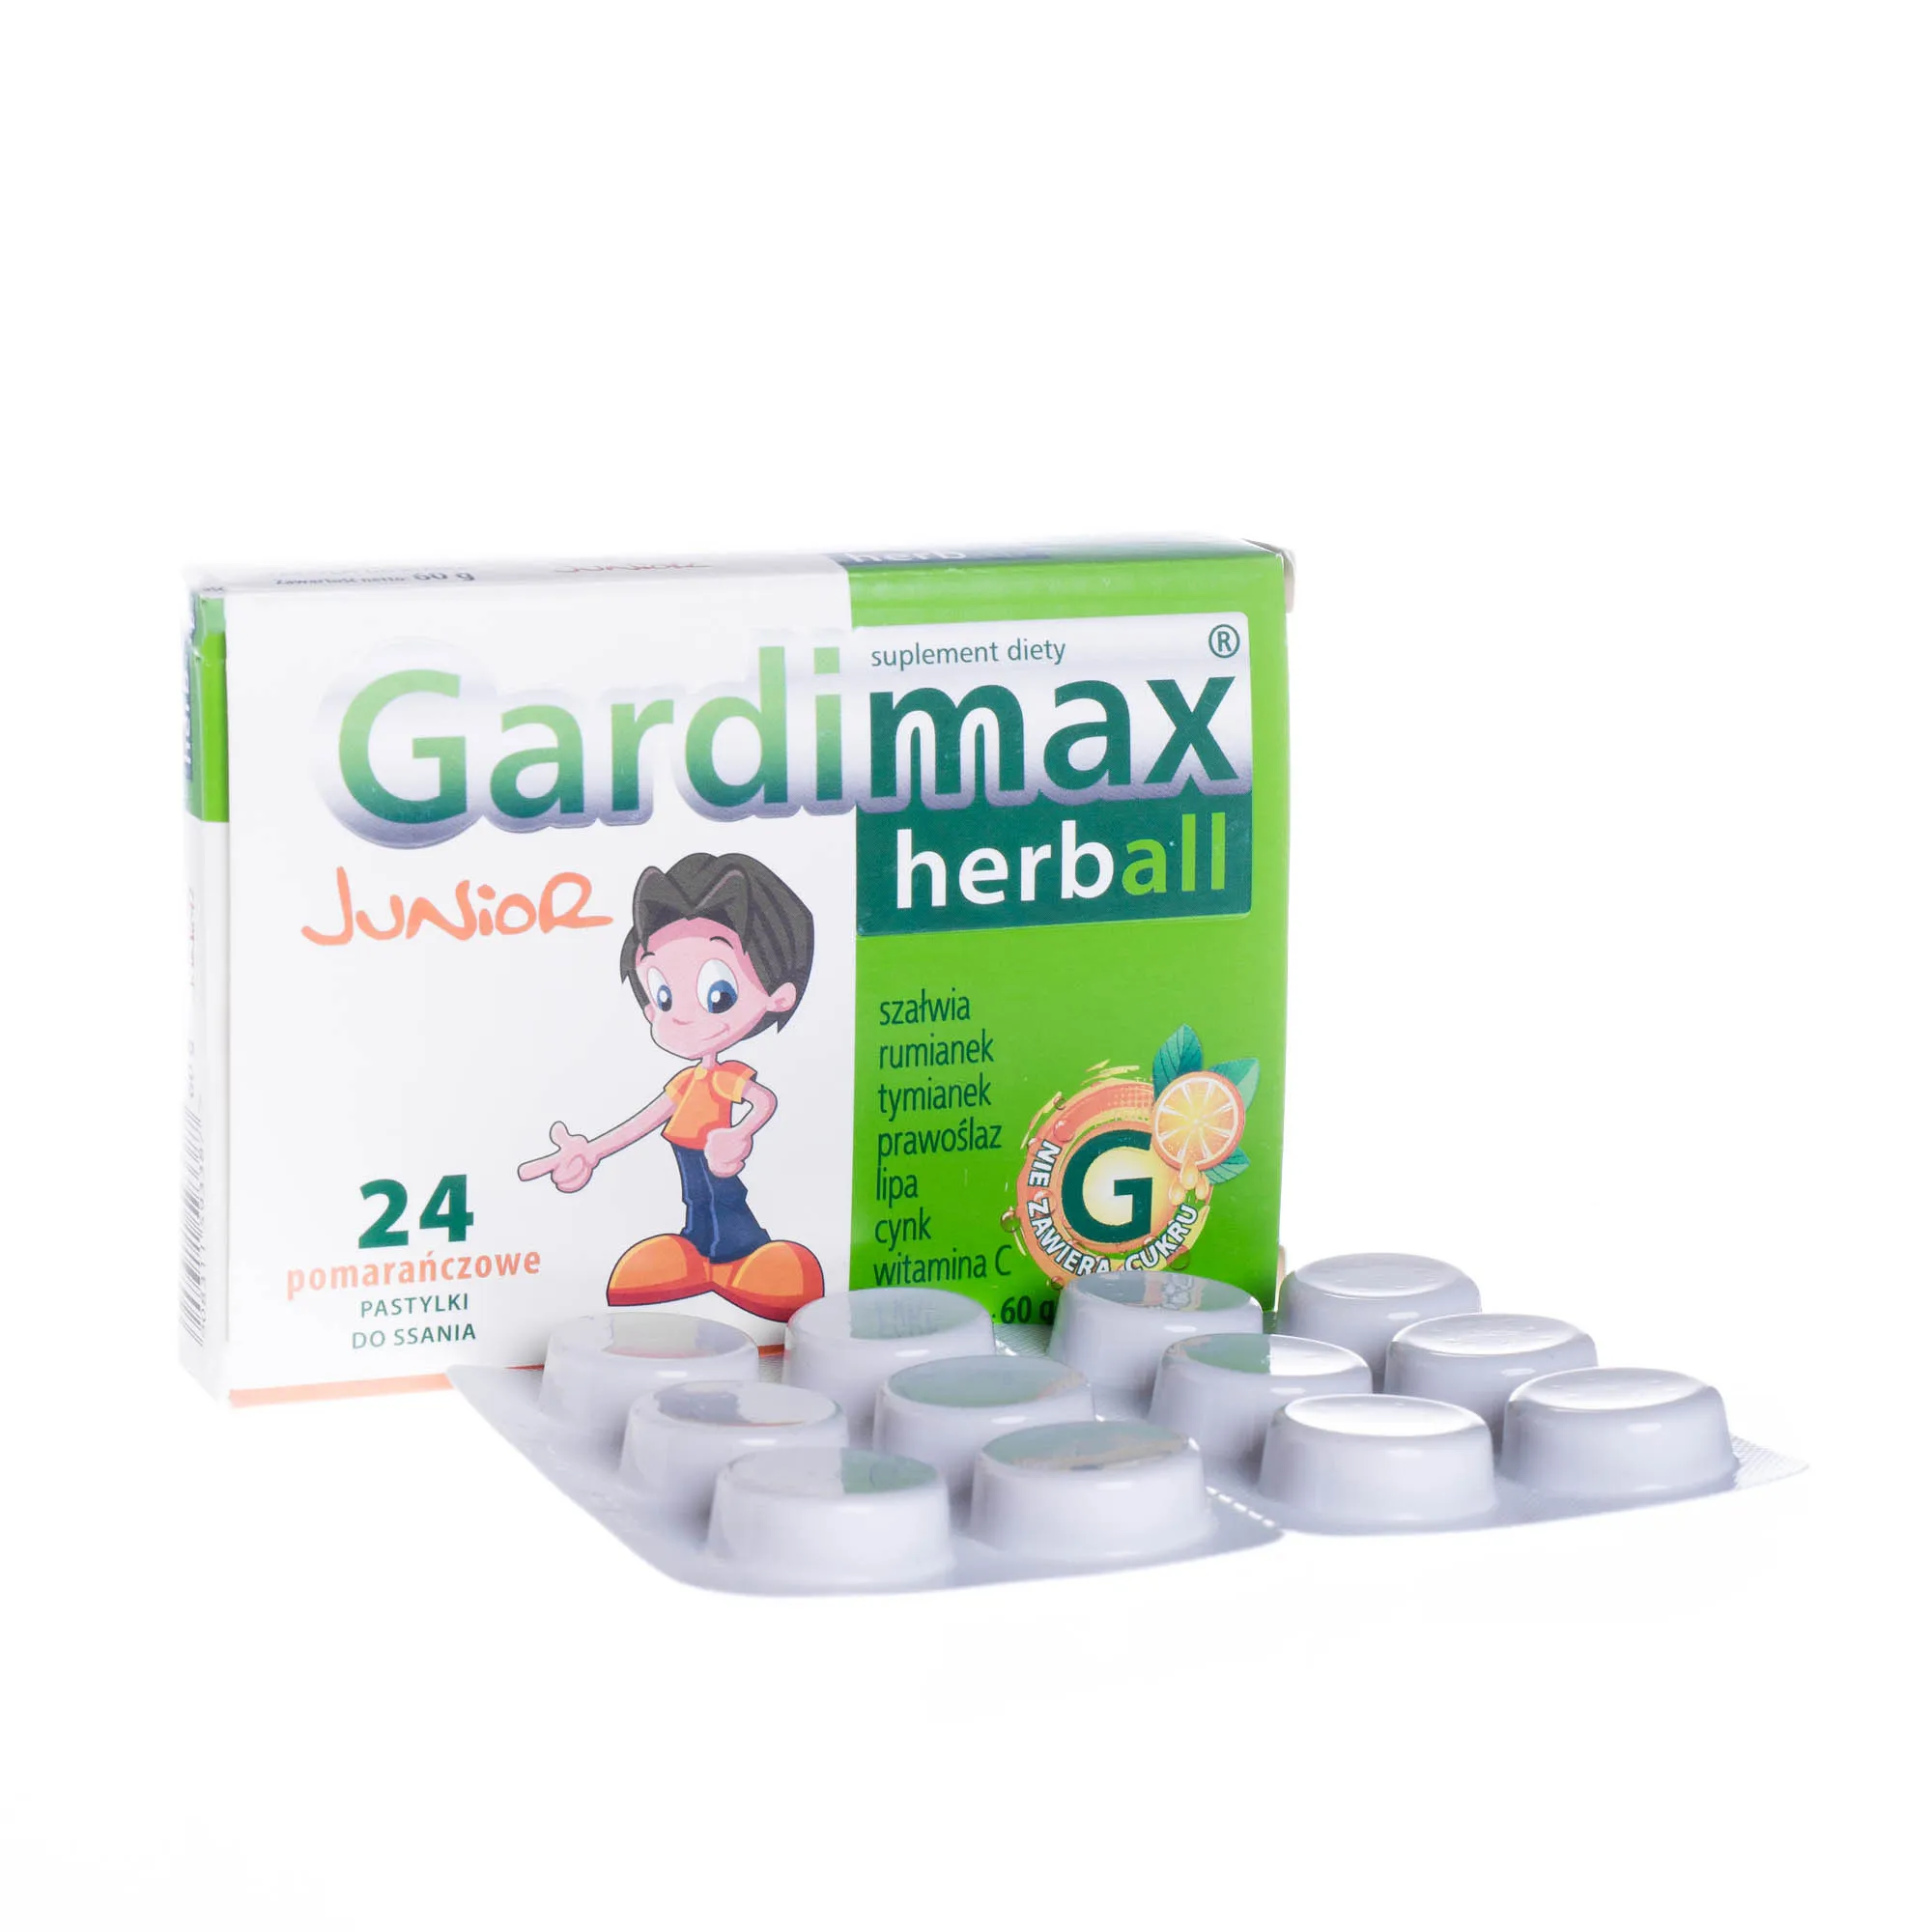 Gardimax herball junior herball, suplement diety, 24 pomarańczowe pastylki do ssania